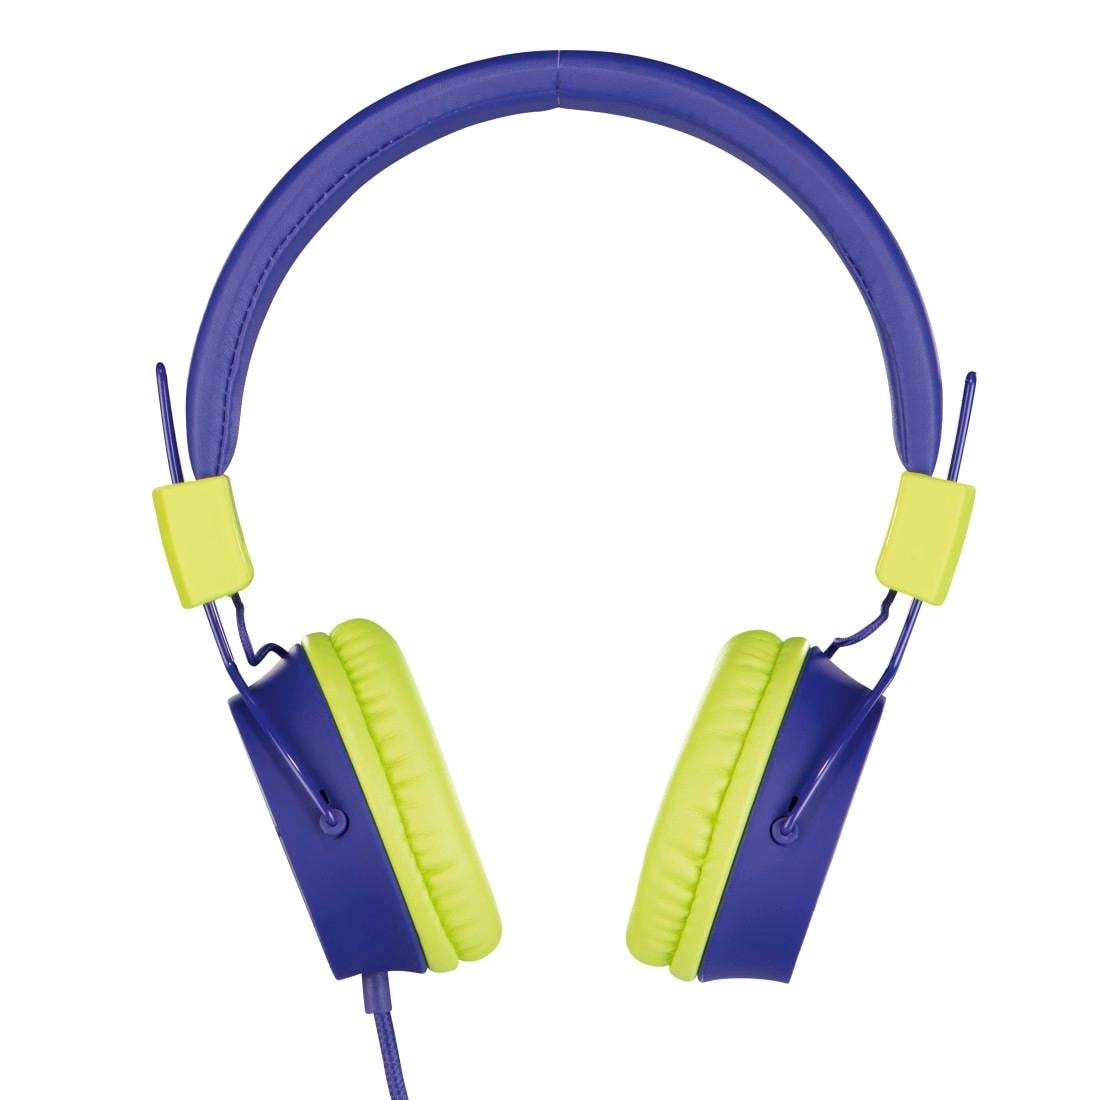 auf weiterer Lautstärkebegrenzung »Kinderkopfhörer OTTO bestellen 85dB mit On-Ear-Kopfhörer möglich Kopfhöreranschluss leicht«, On-Ear, Thomson Kabel zusammenfaltbar, größenverstellbar bei